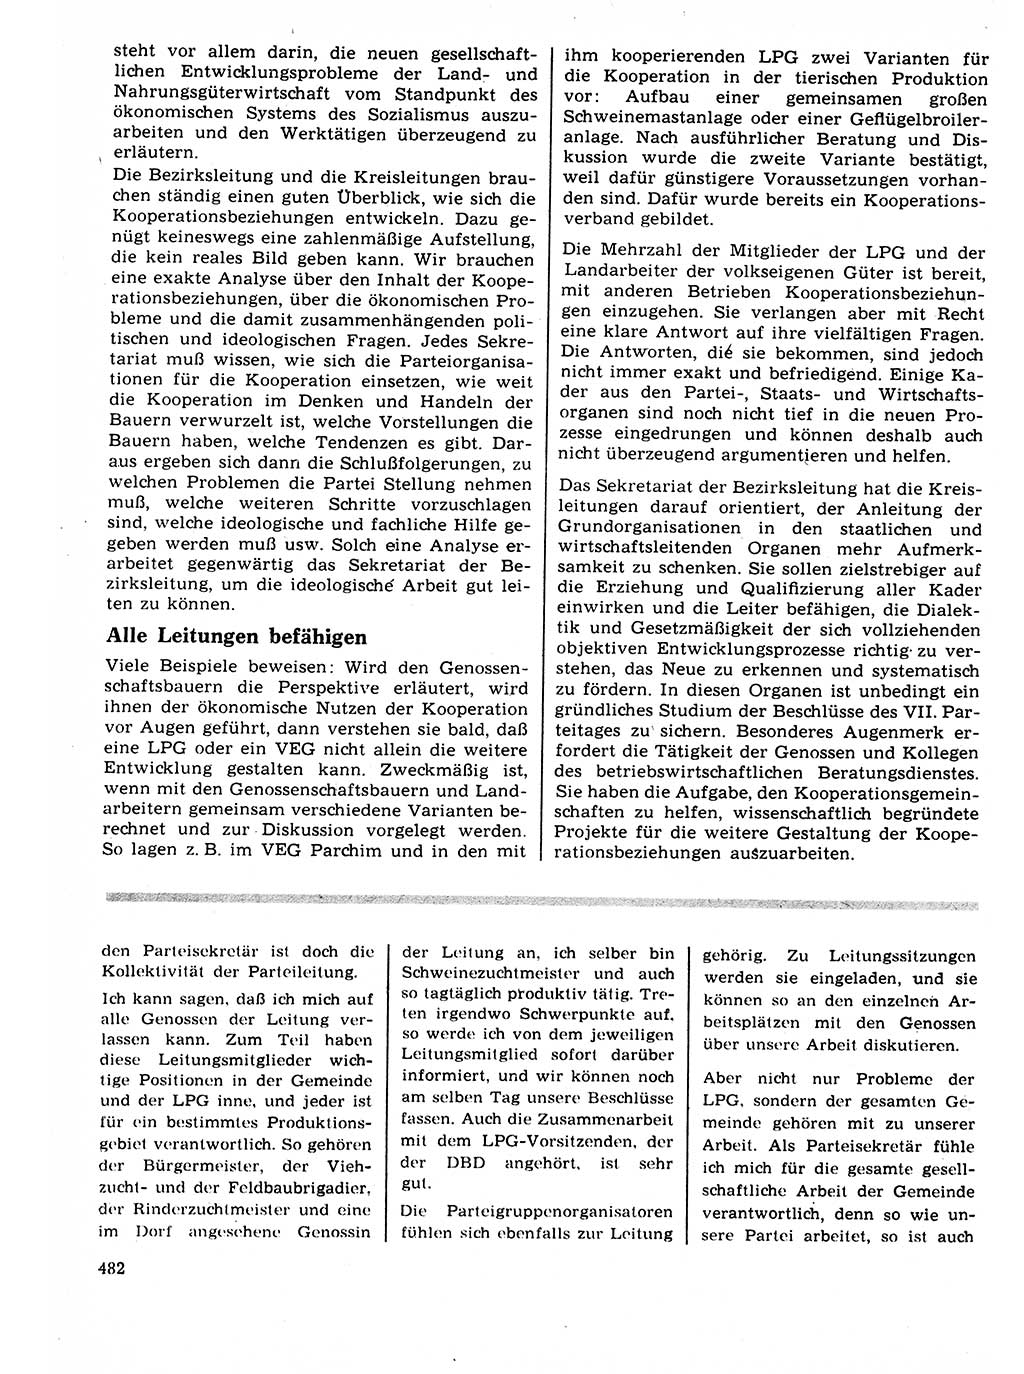 Neuer Weg (NW), Organ des Zentralkomitees (ZK) der SED (Sozialistische Einheitspartei Deutschlands) für Fragen des Parteilebens, 22. Jahrgang [Deutsche Demokratische Republik (DDR)] 1967, Seite 482 (NW ZK SED DDR 1967, S. 482)